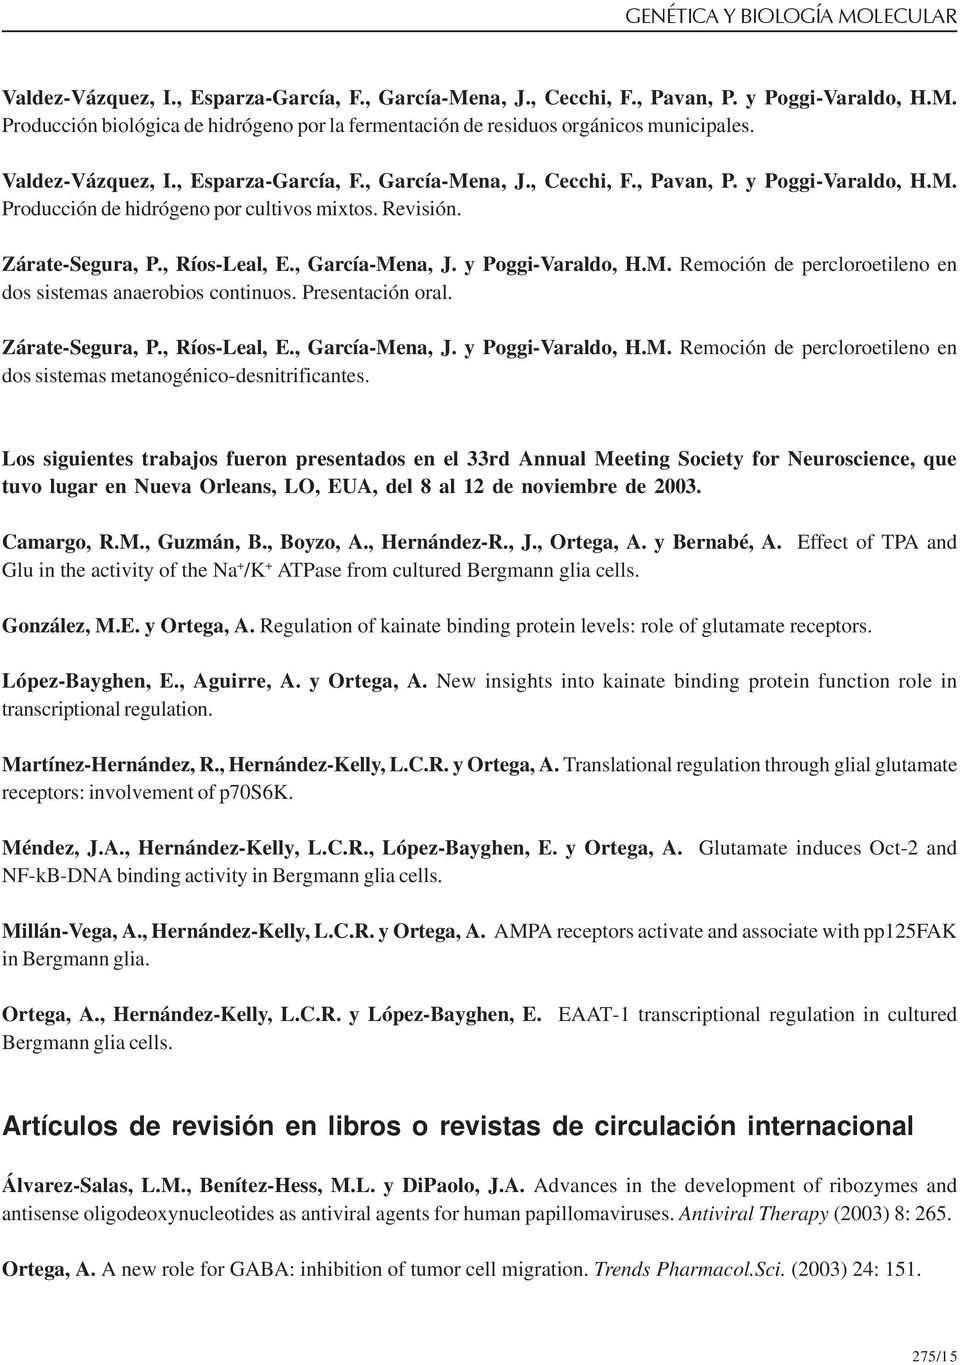 , García-Mena, J. y Poggi-Varaldo, H.M. Remoción de percloroetileno en dos sistemas anaerobios continuos. Presentación oral. Zárate-Segura, P., Ríos-Leal, E., García-Mena, J. y Poggi-Varaldo, H.M. Remoción de percloroetileno en dos sistemas metanogénico-desnitrificantes.